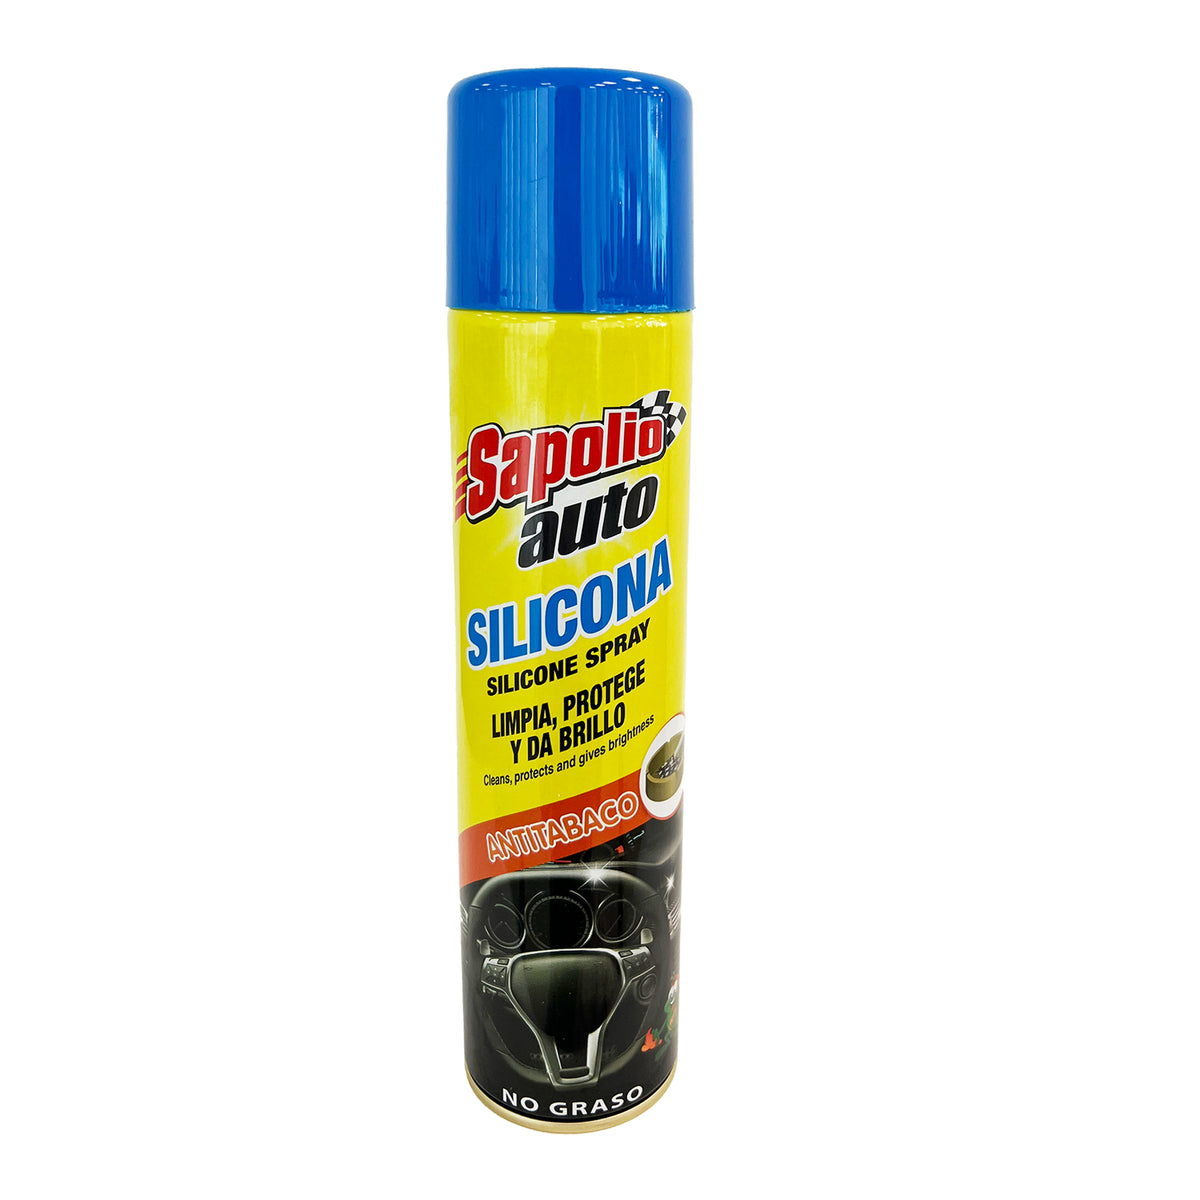 Sapolio auto silicona spray antitabaco x 360ml — Amarket